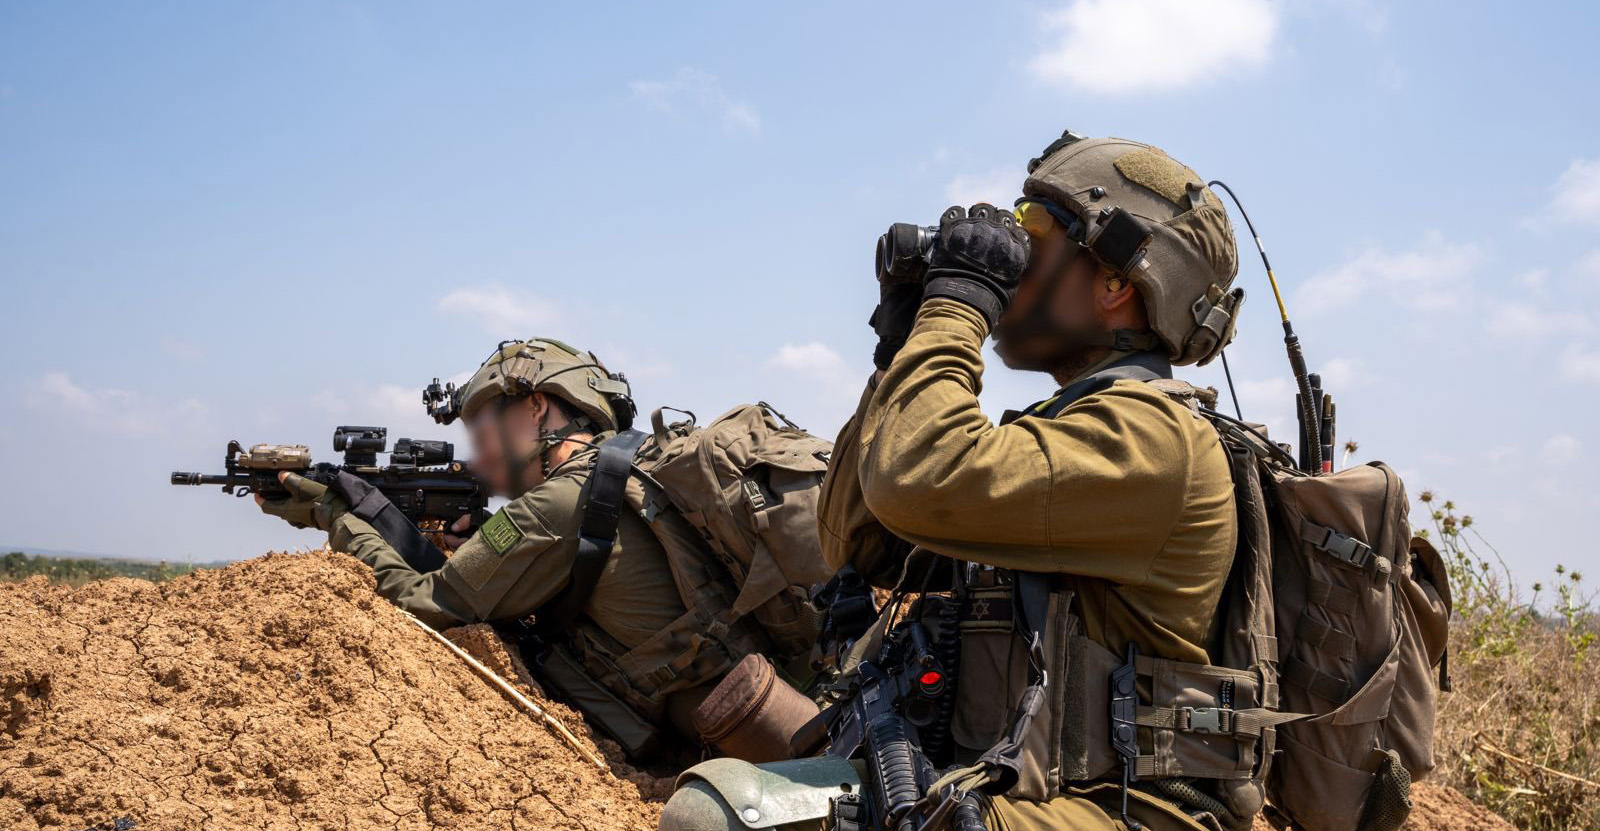 Πόλεμος στη Γάζα: Αυτό είναι το σχέδιο των IDF για την εισβολή στη Ράφα